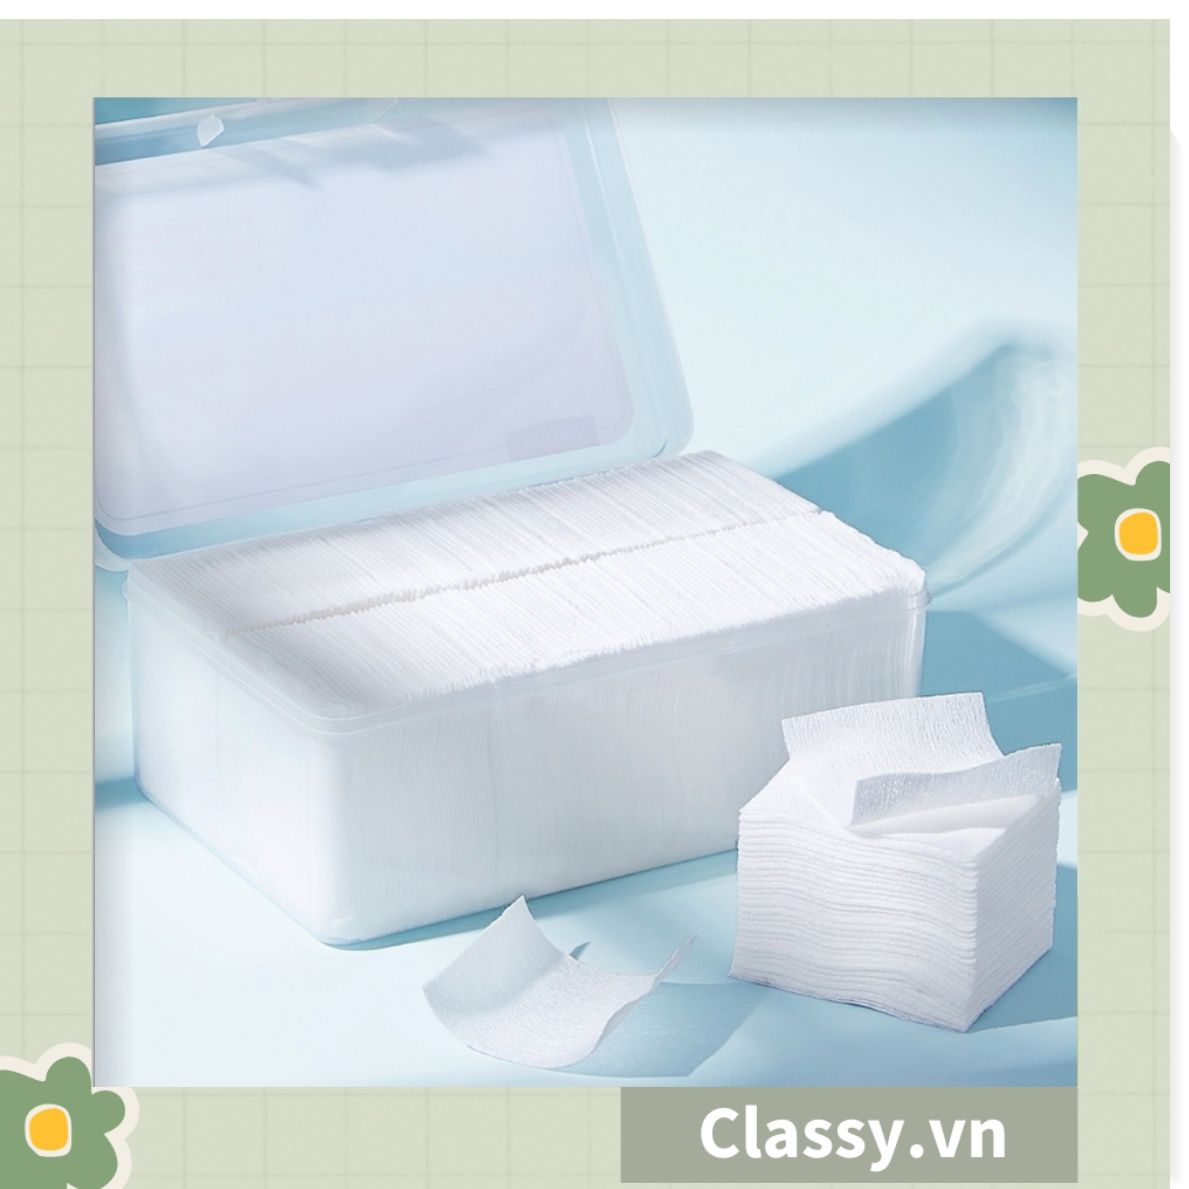  120 miếng Bông Tẩy Trang Cotton Pads Classy chất liệu Cotton bỏ túi du lịch tiện lợi đựng trong hộp nhựa PK1684 